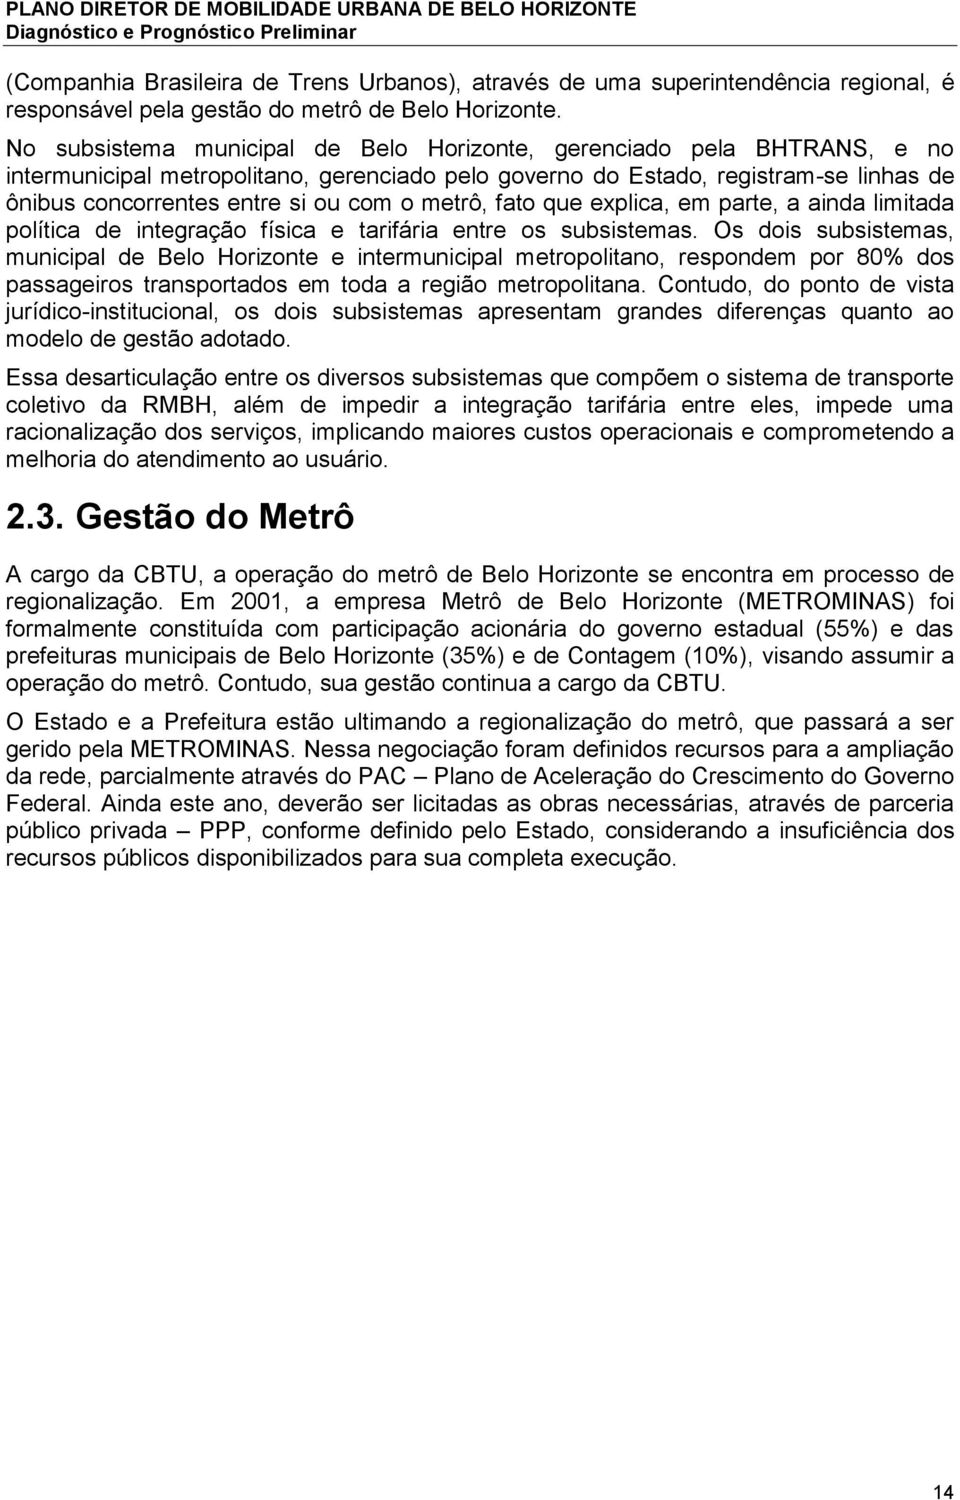 metrô, fato que explica, em parte, a ainda limitada política de integração física e tarifária entre os subsistemas.